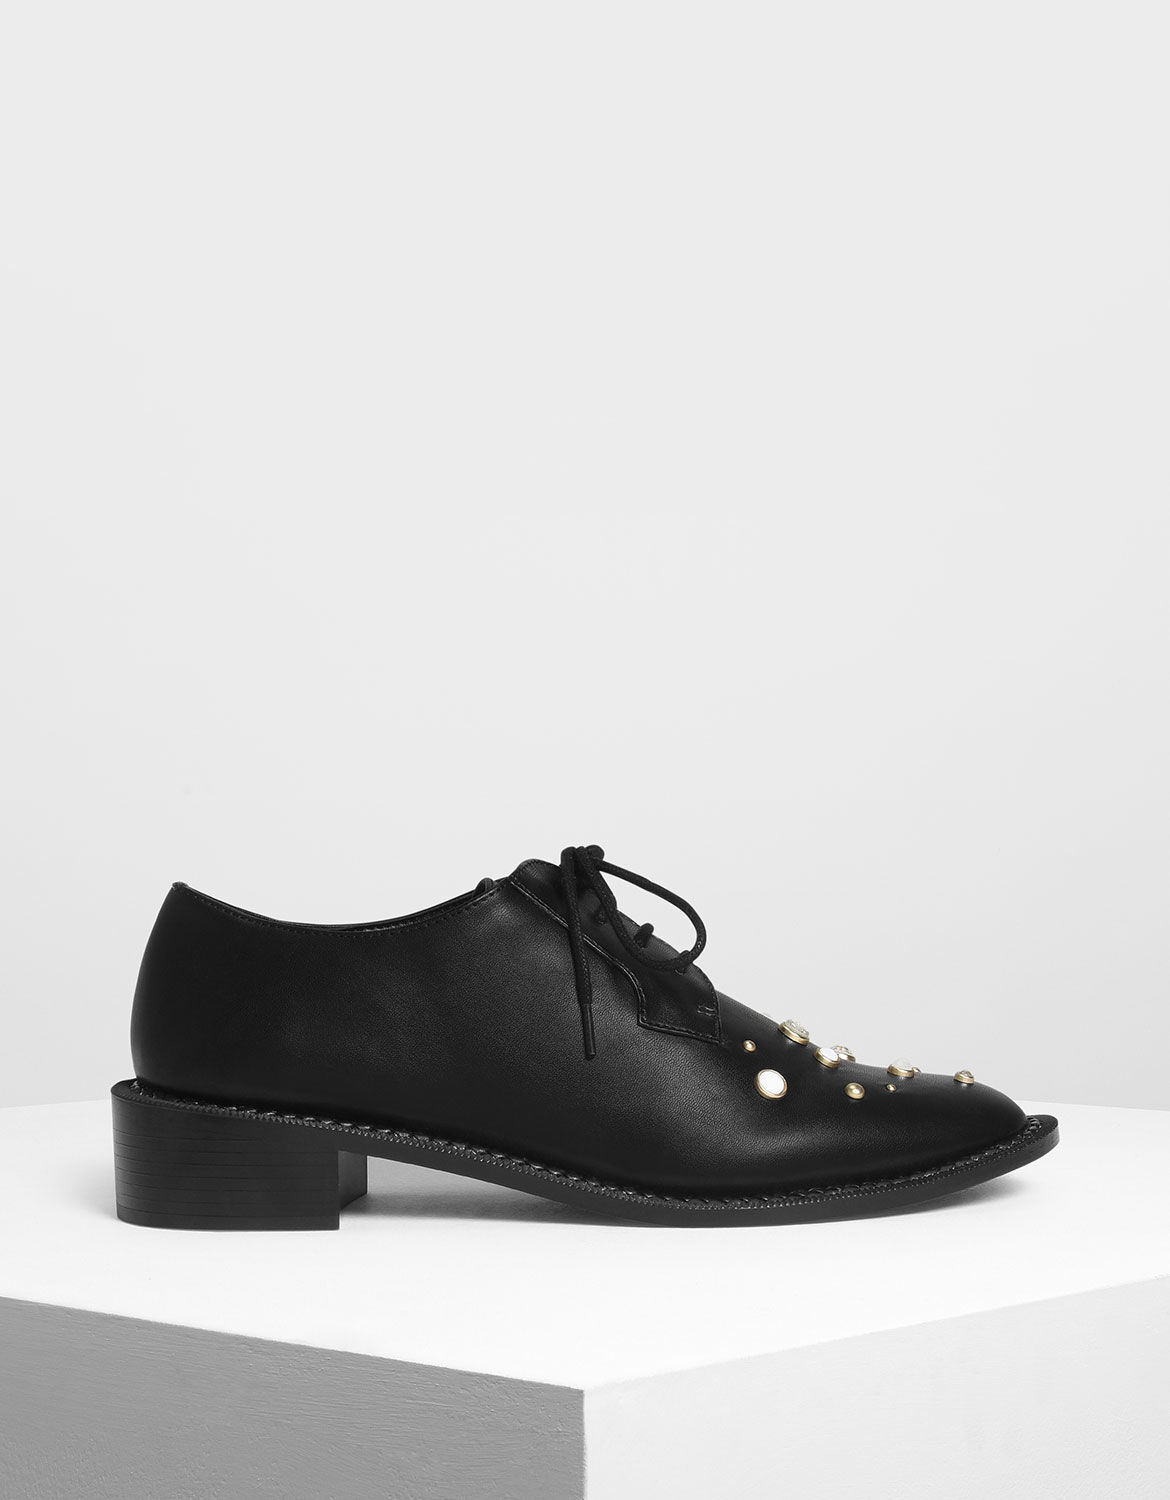 black embellished shoes